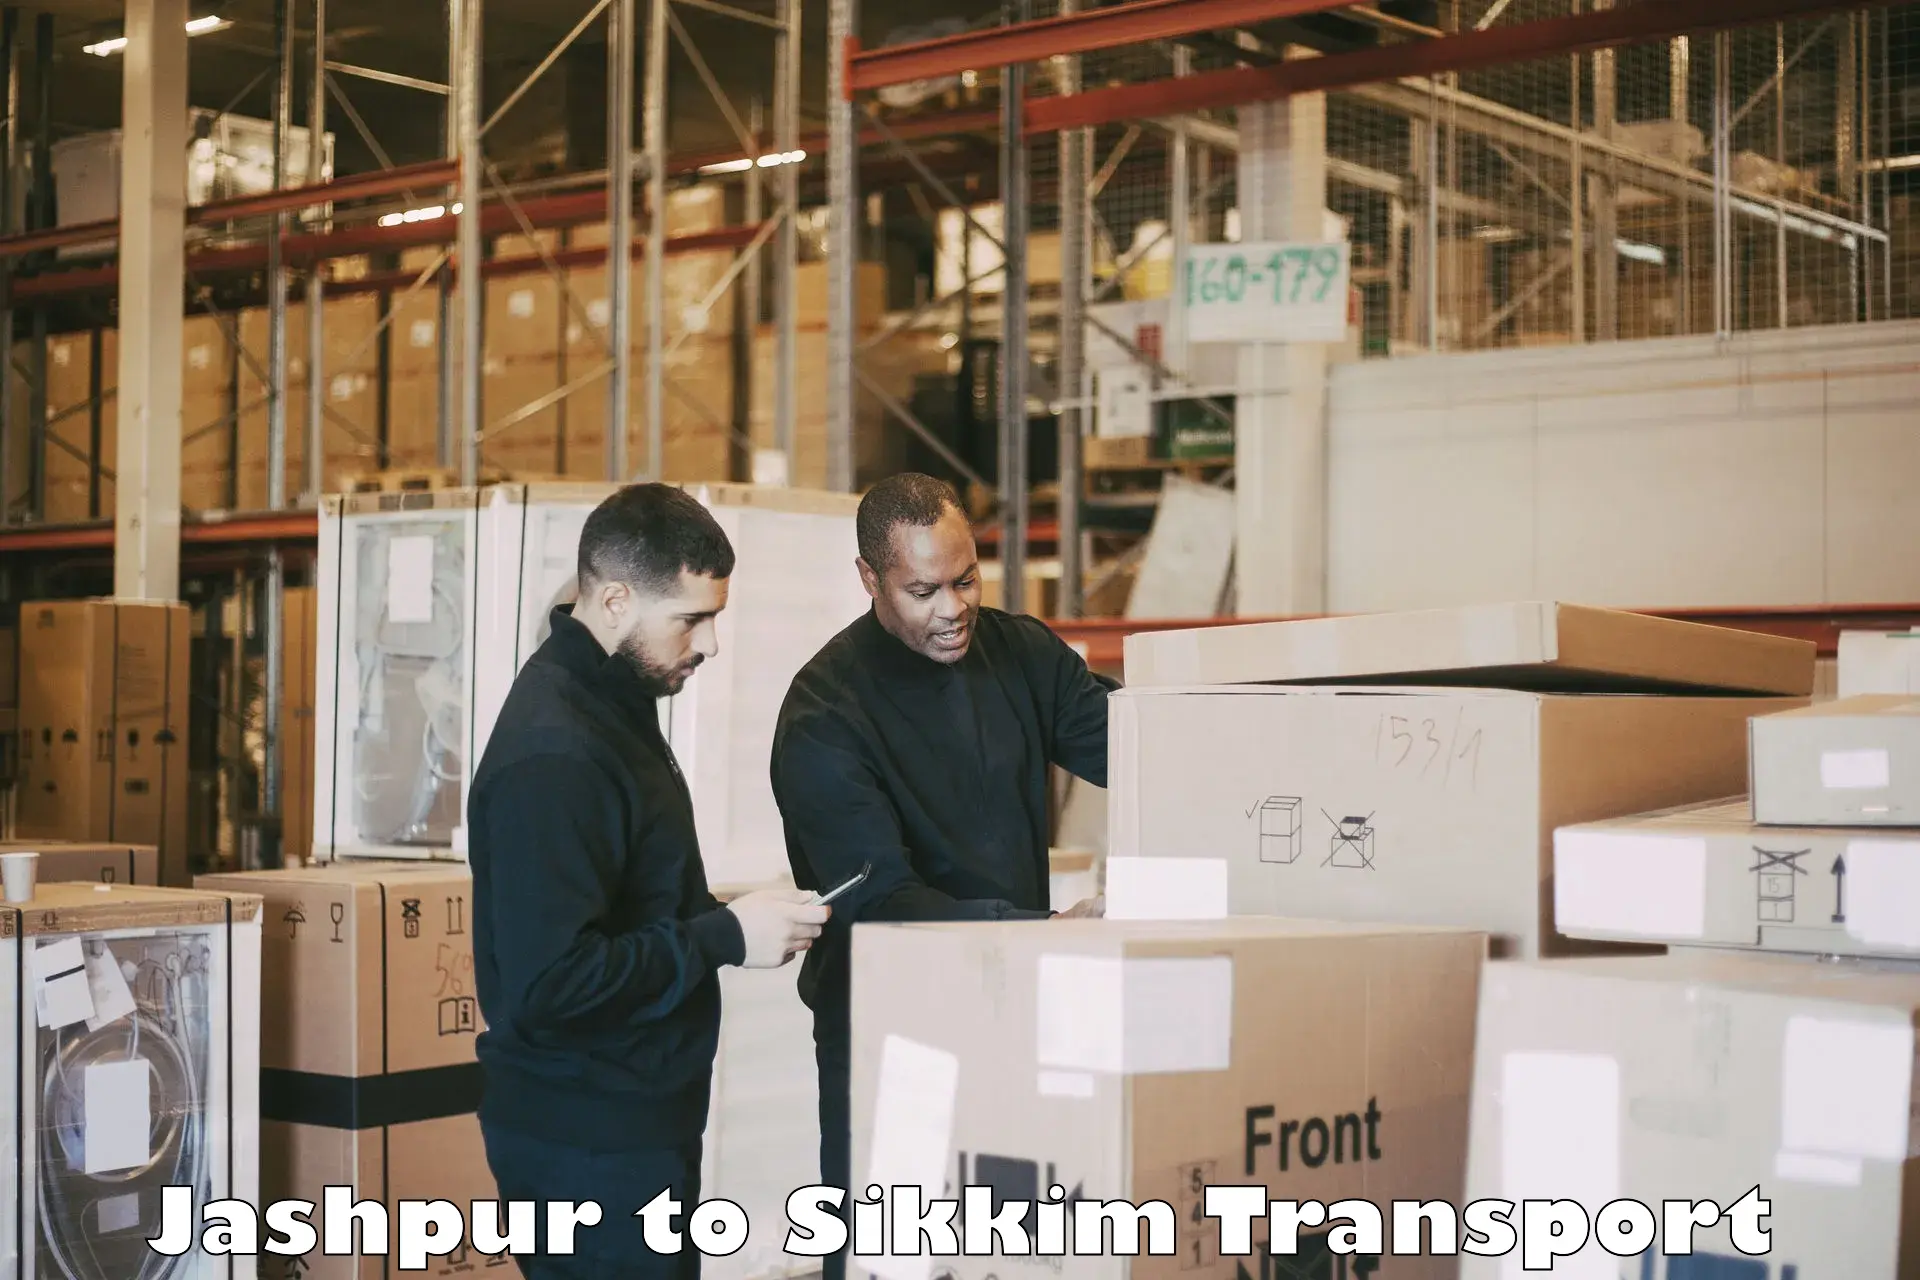 Online transport service Jashpur to Sikkim